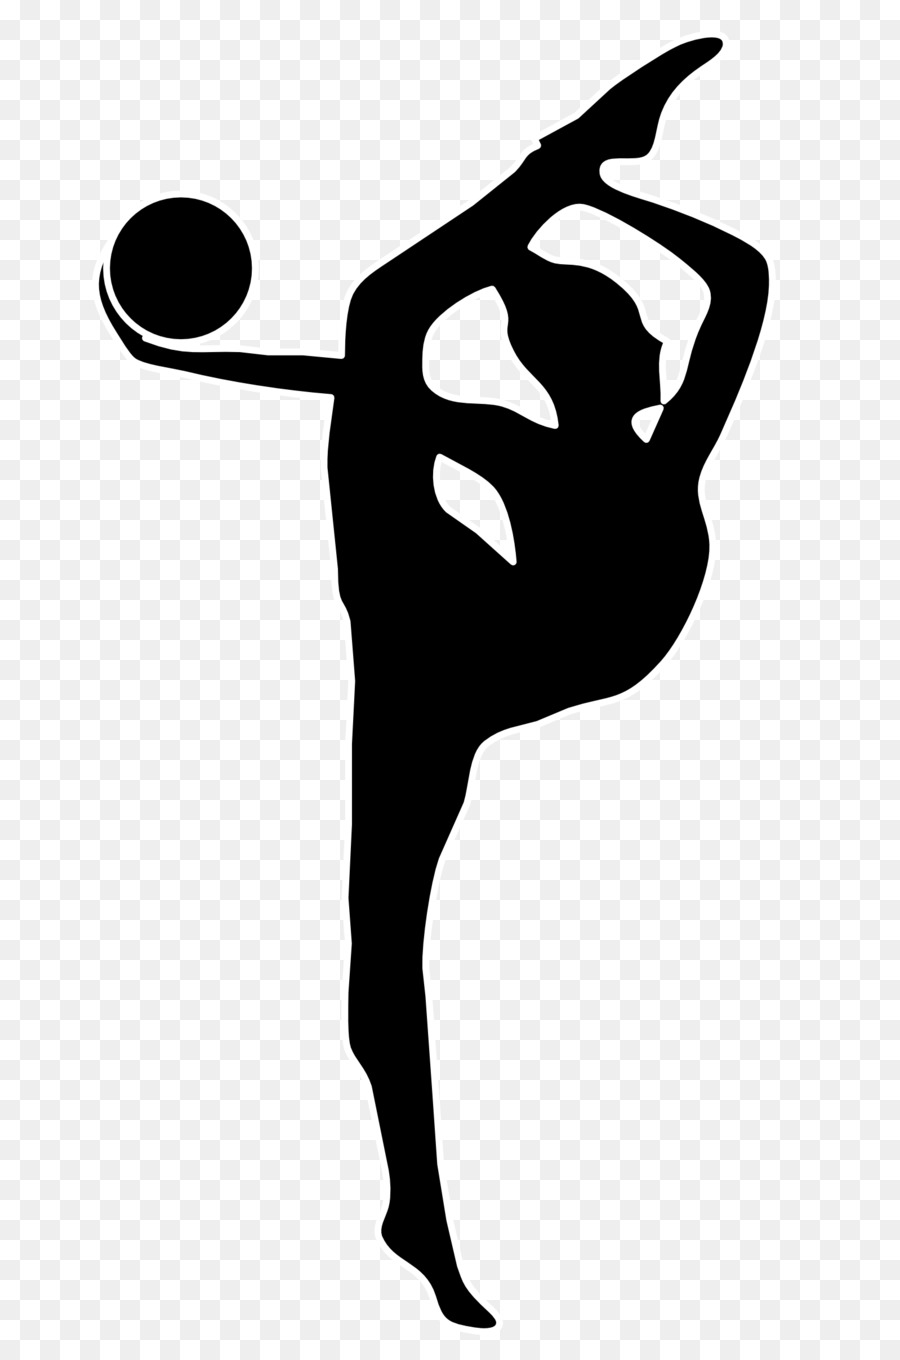 Wascana Rhythmic Gymnastics Club Artistic gymnastics Logo - gymnastics png download - 1598*2400 - Free Transparent Gymnastics png Download.